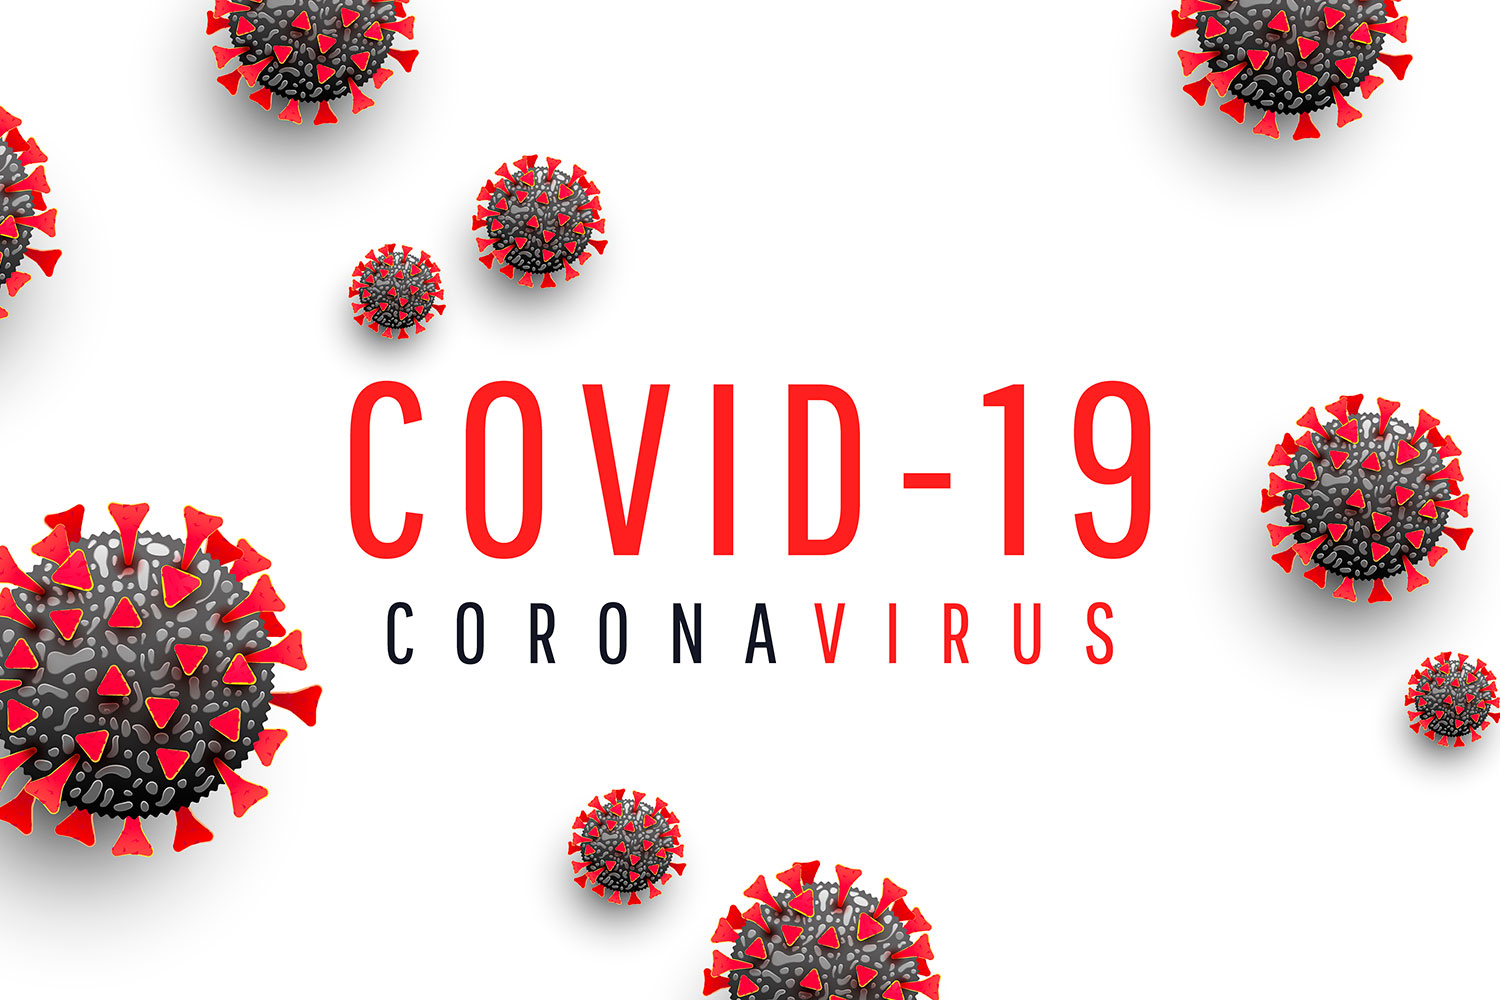 Las palabras COVID-19 y coronavirus junto a dibujos del virus que provoca la enfermedad